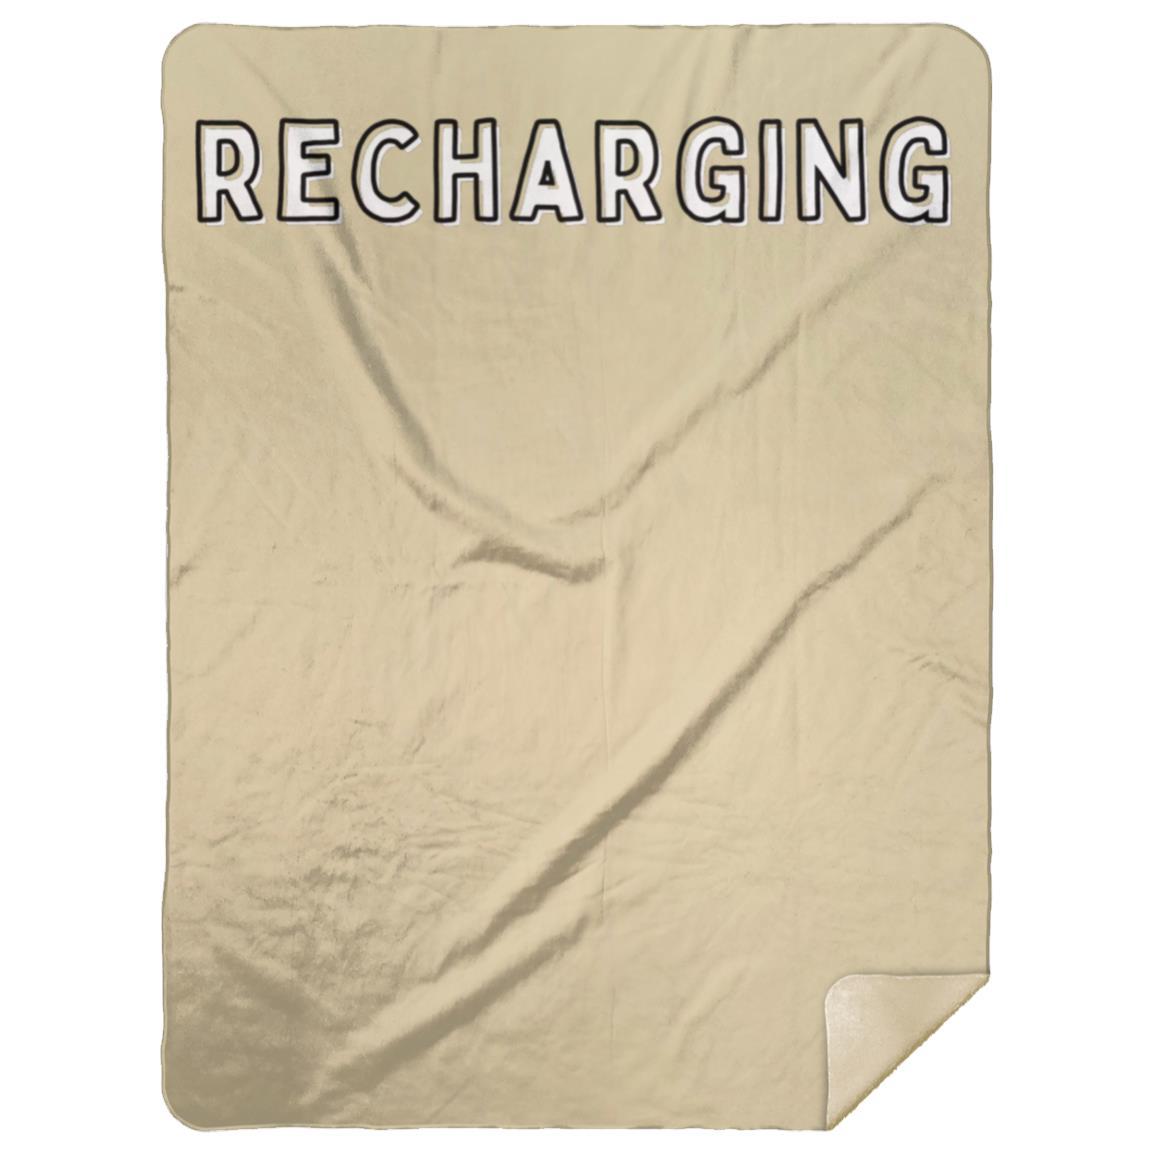 Recharging Premium Mink Sherpa Blanket 60x80